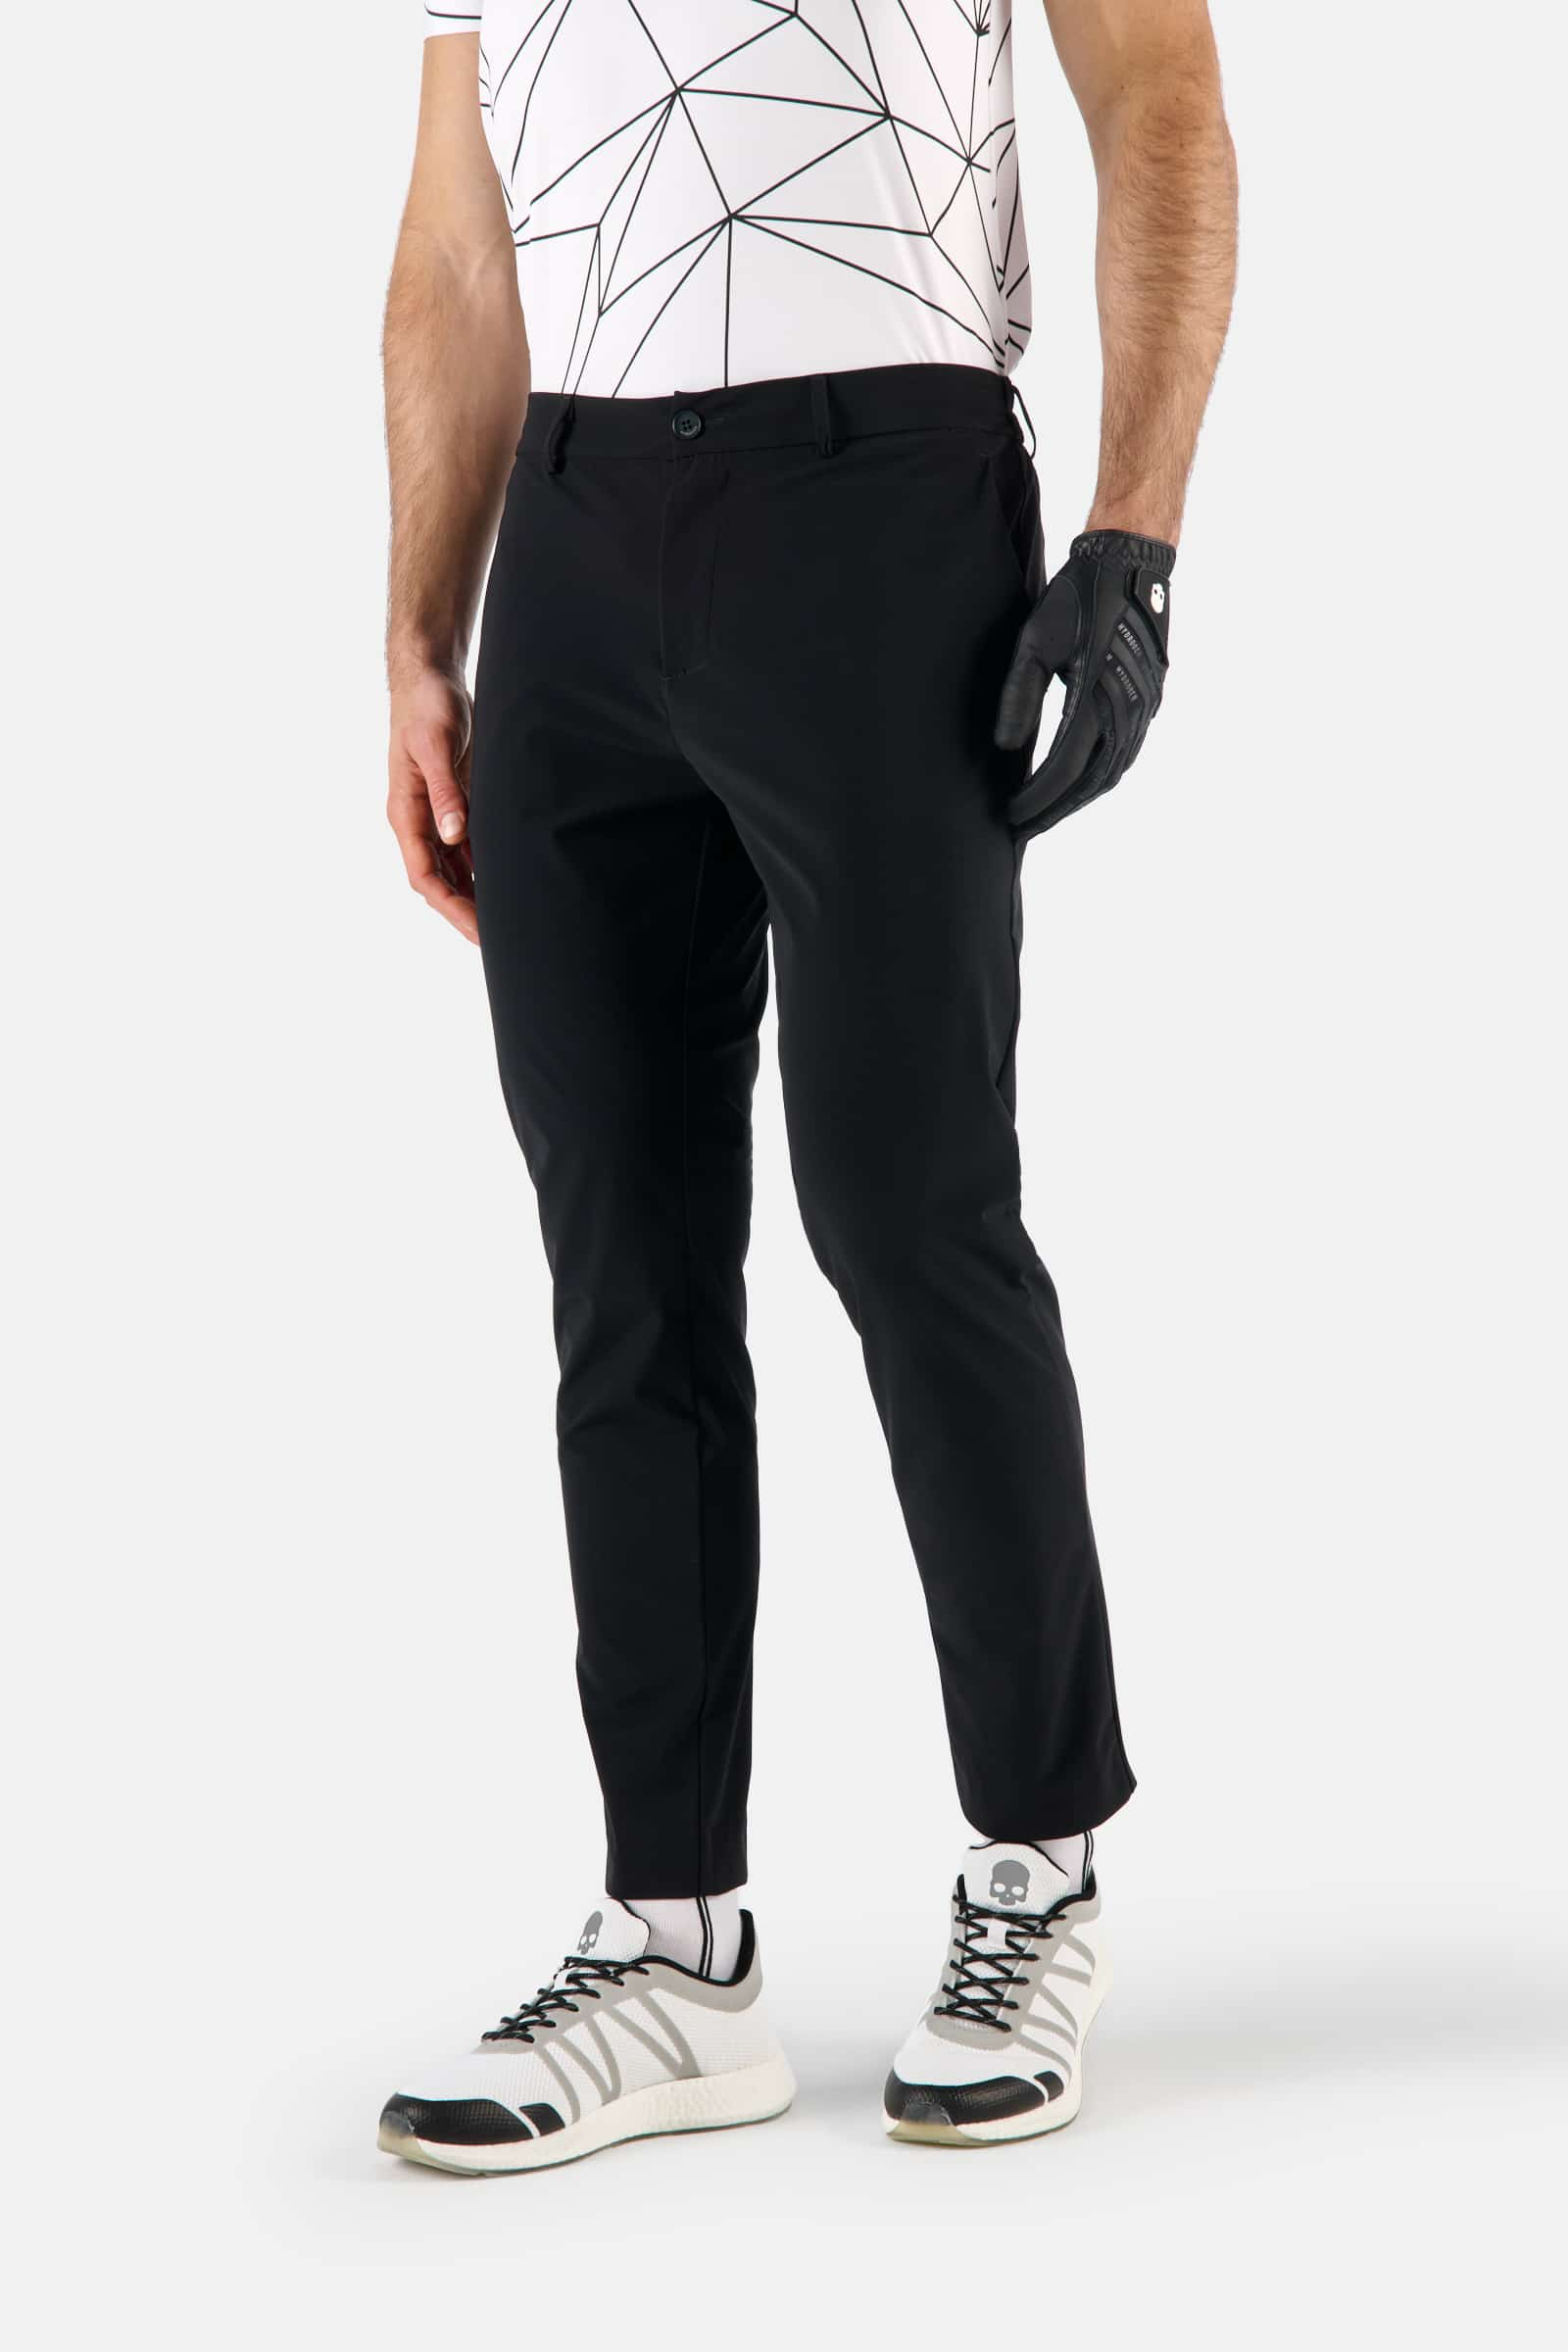 GOLF PANTS - BLACK - Hydrogen - Luxury Sportwear